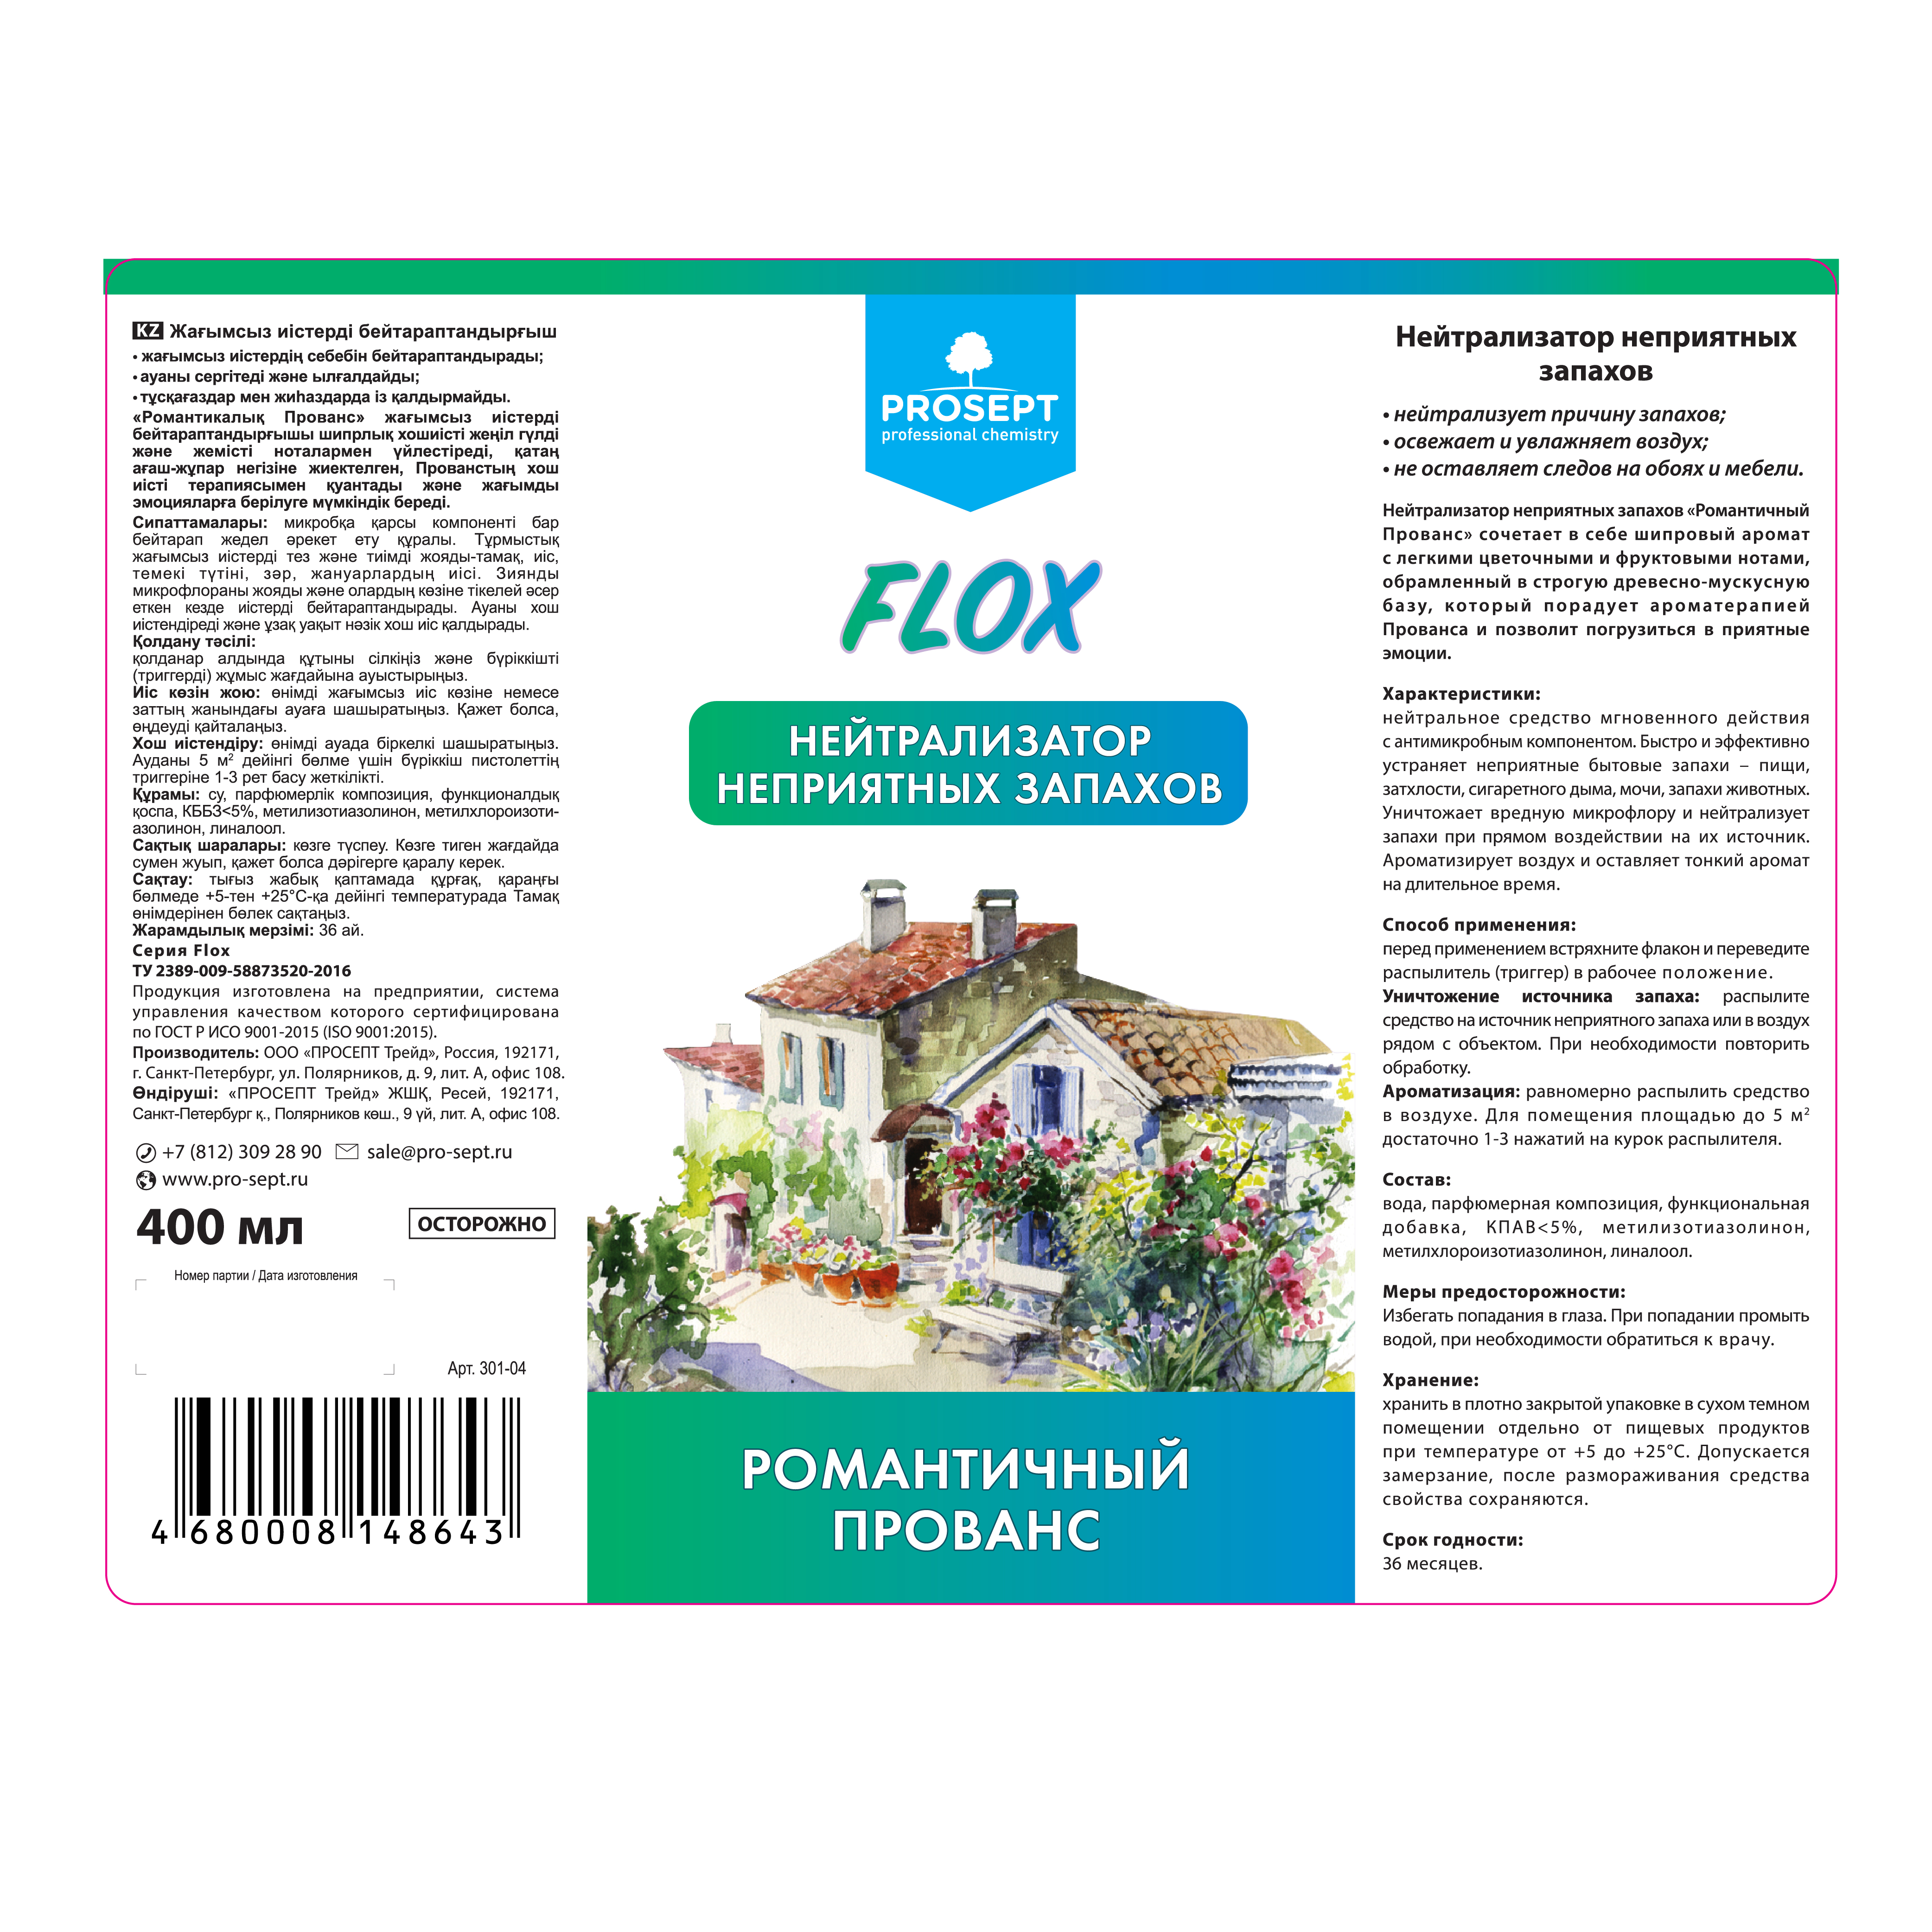 Нейтрализация неприятных запахов и ароматизация воздуха FLOX "Романтичный Прованс" 400 мл